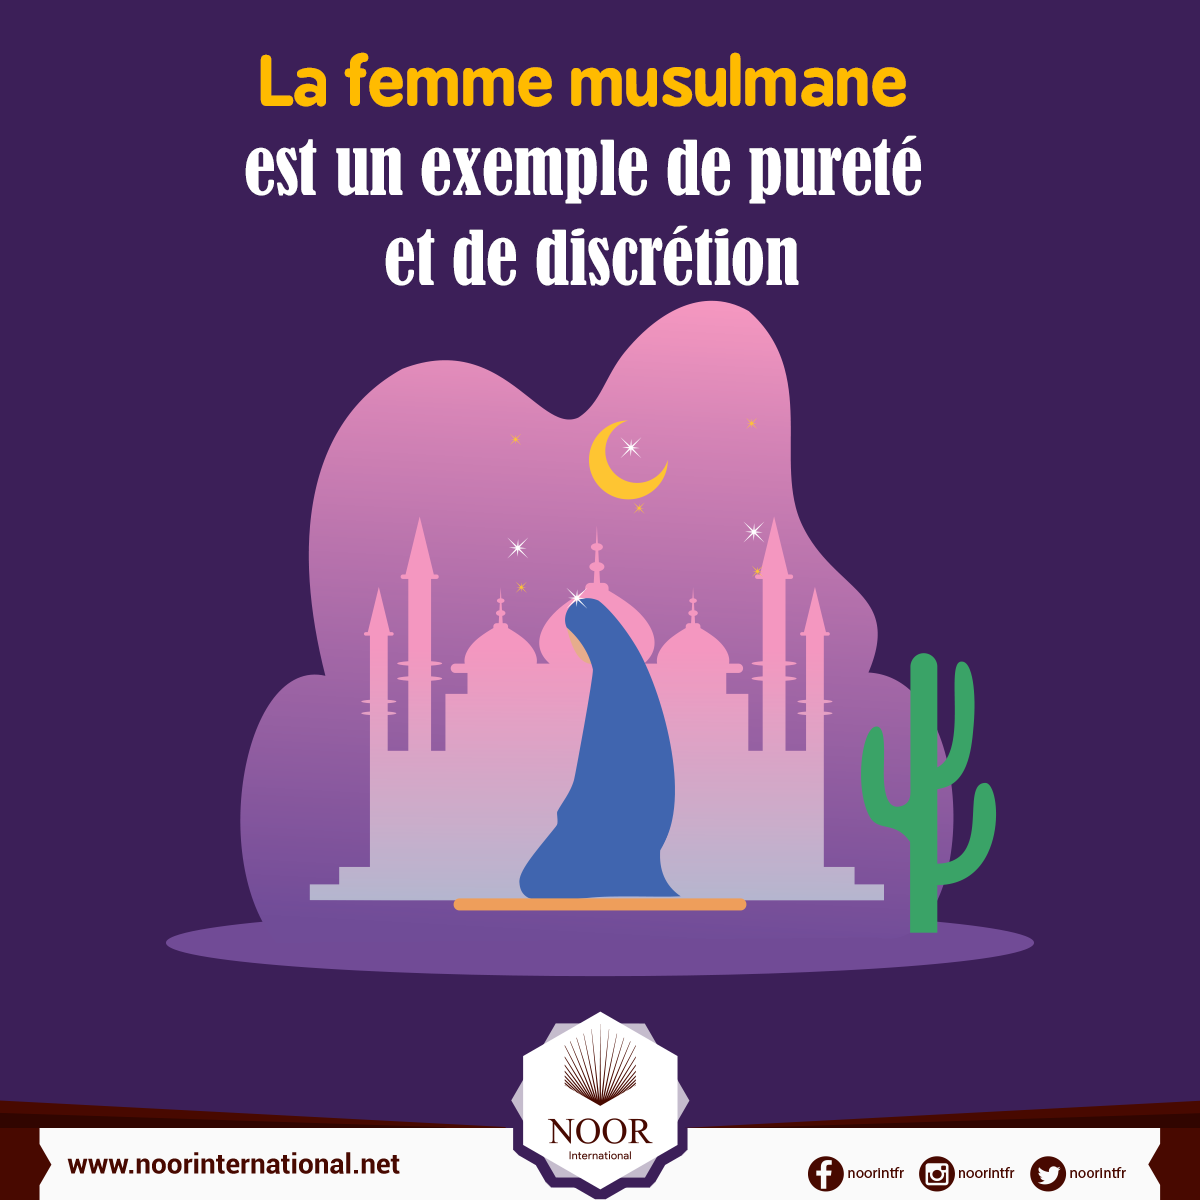 La femme musulmane est un exemple de pureté et de discrétion